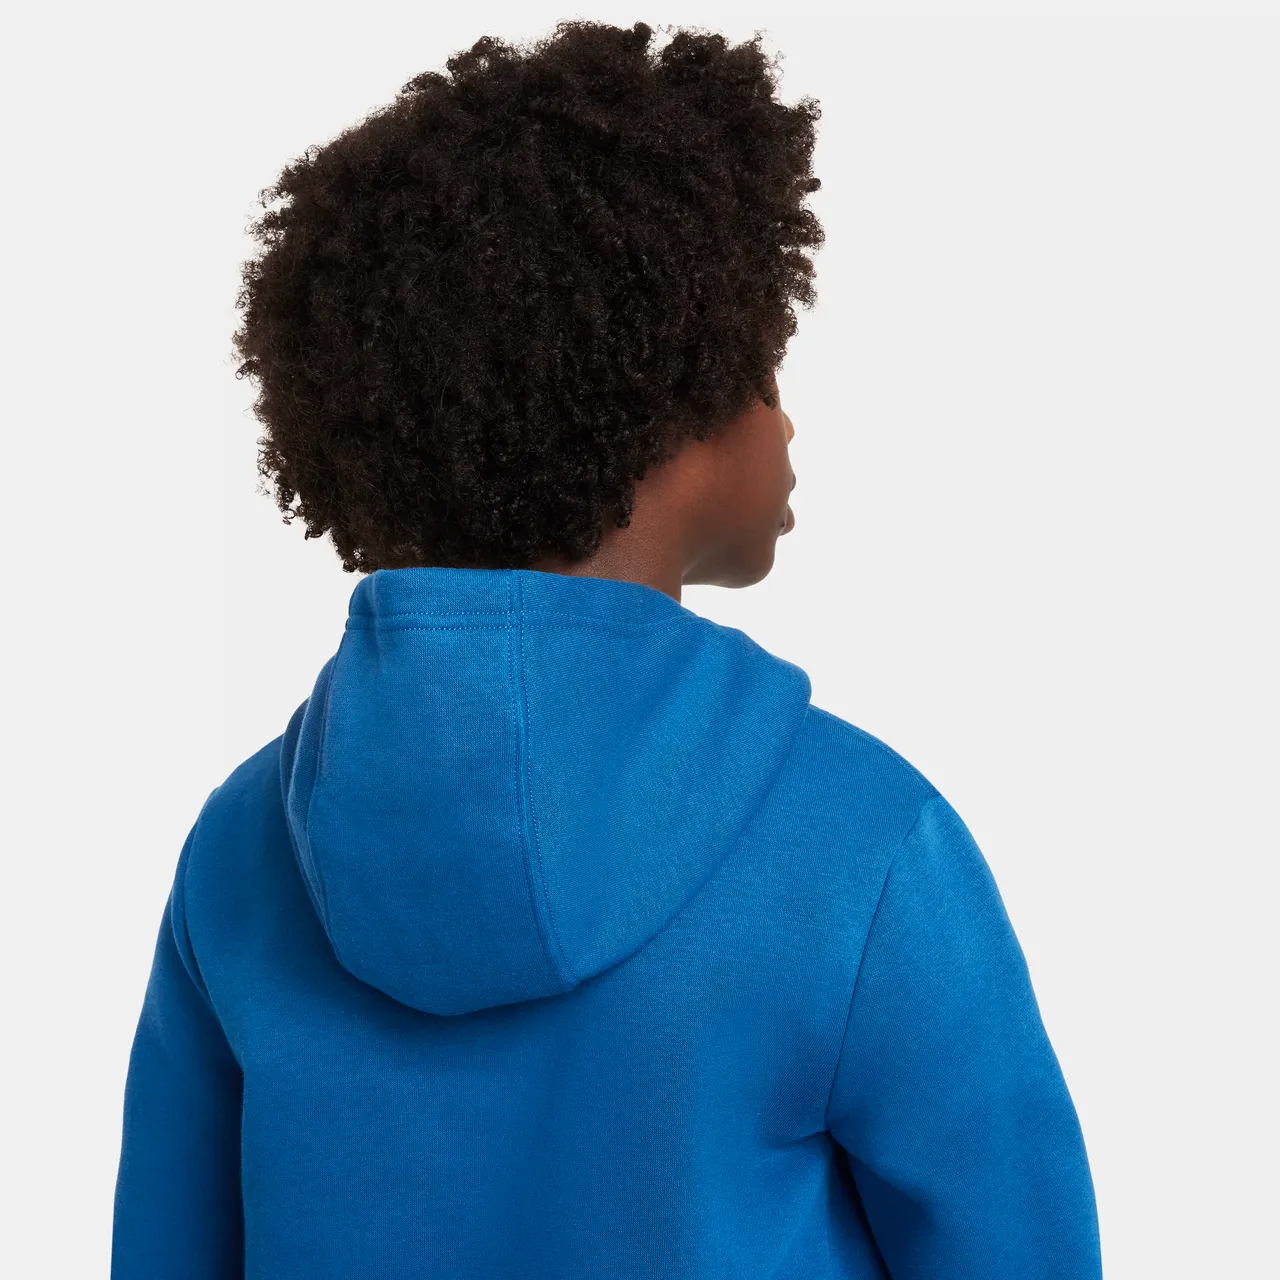 Nike Air Older Kids' Pullover Fleece Hoodie - Blue - Cotton